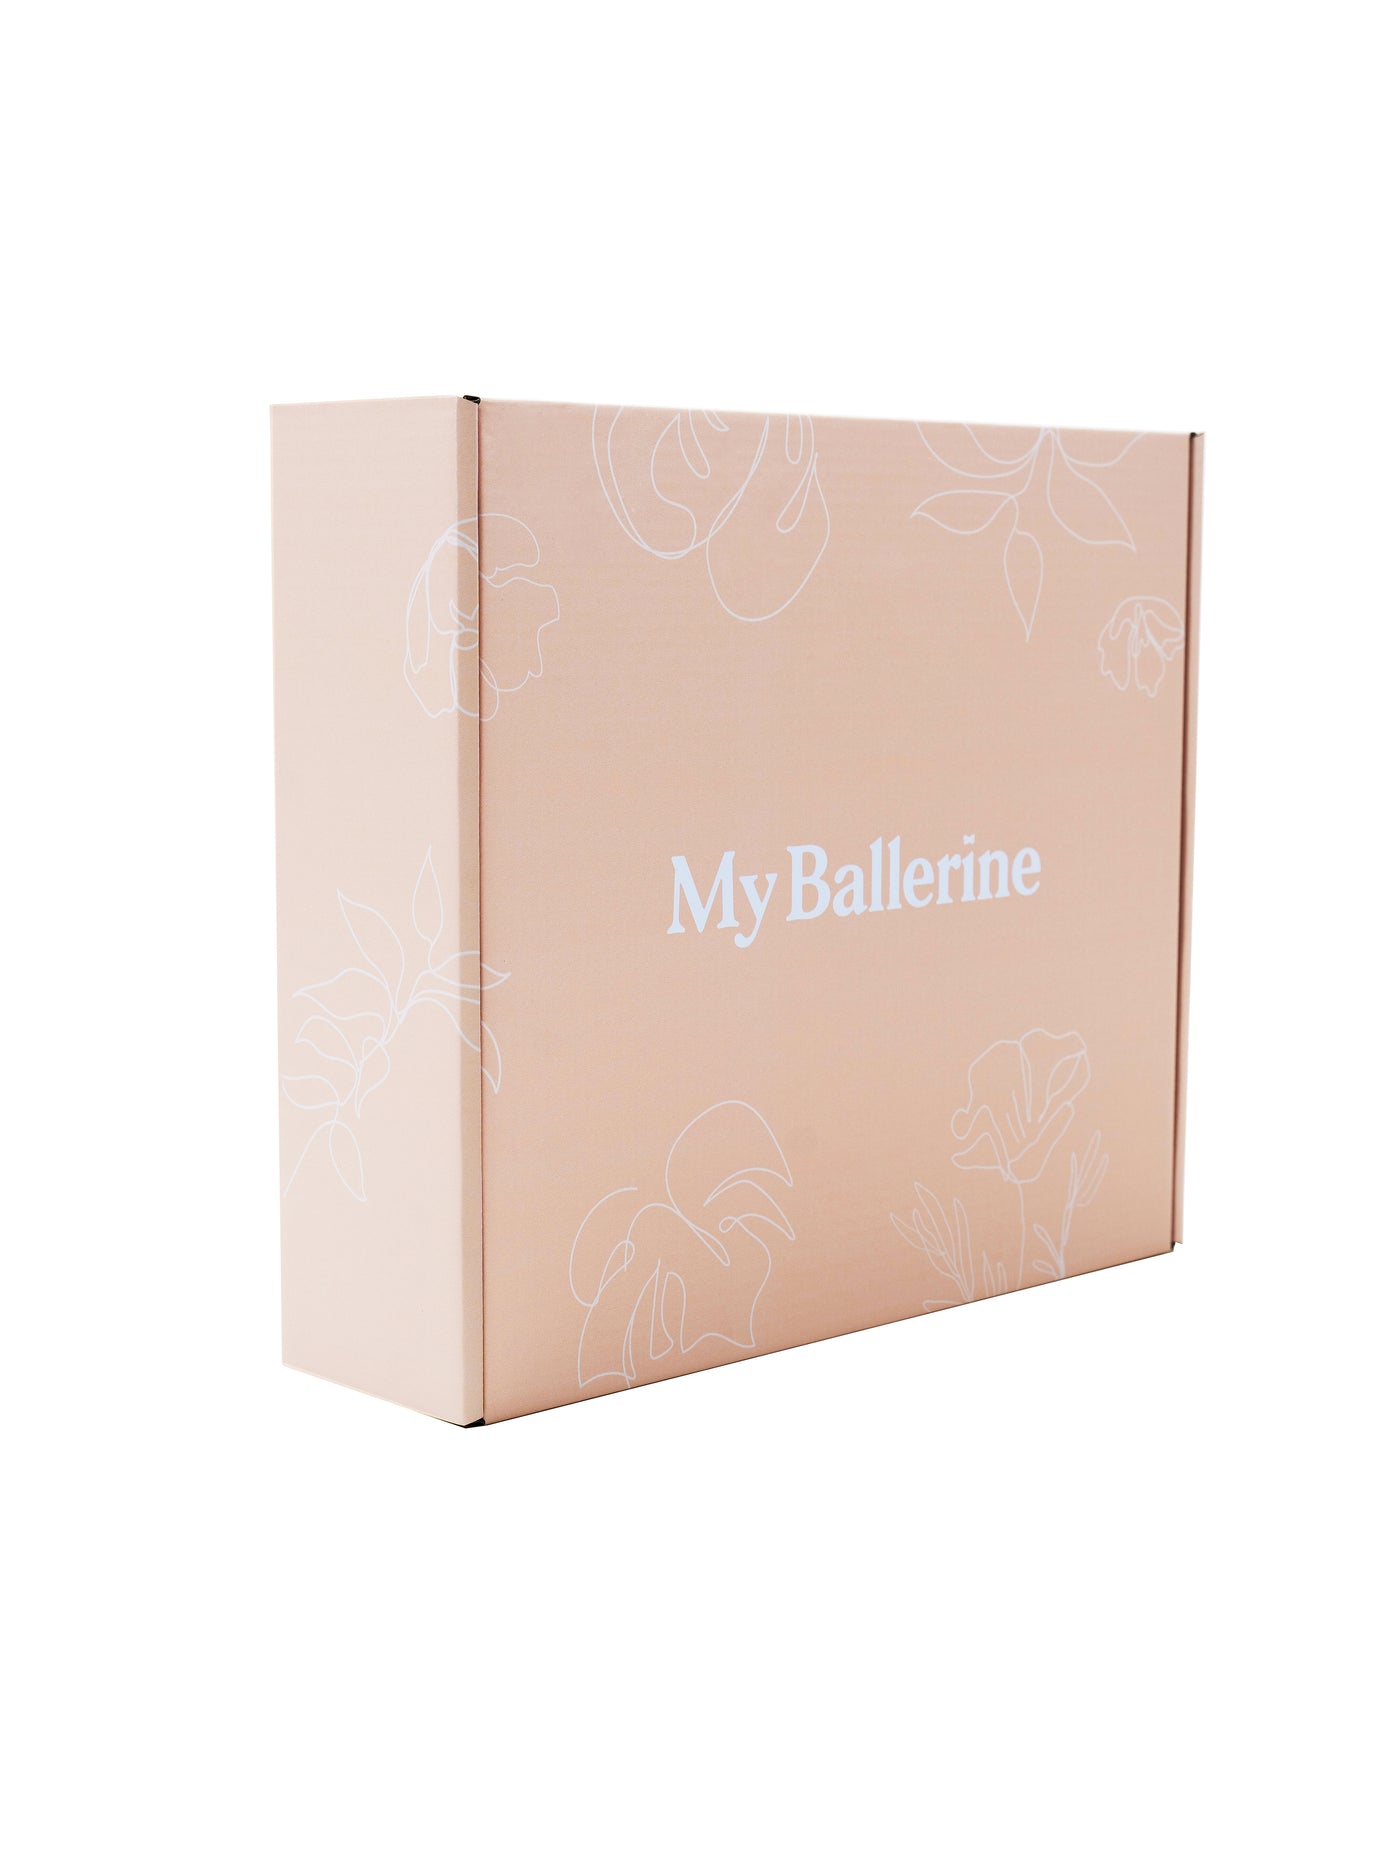 My Ballerine Gift Box In Beige